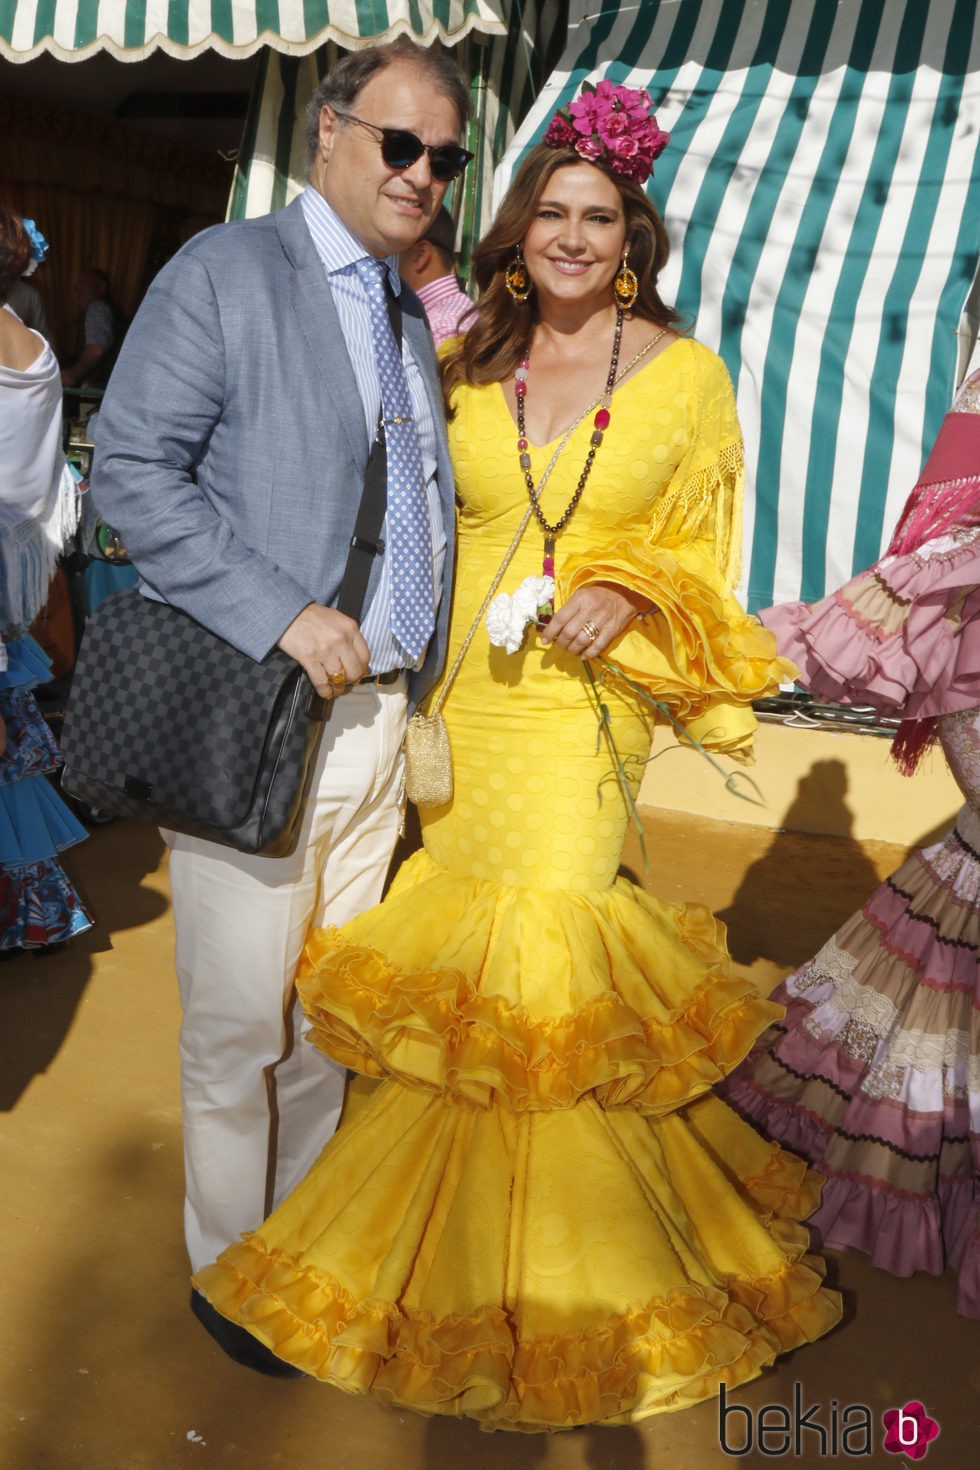 Marina Danko y Fabio Mantegazza en la Feria de Abril 2016